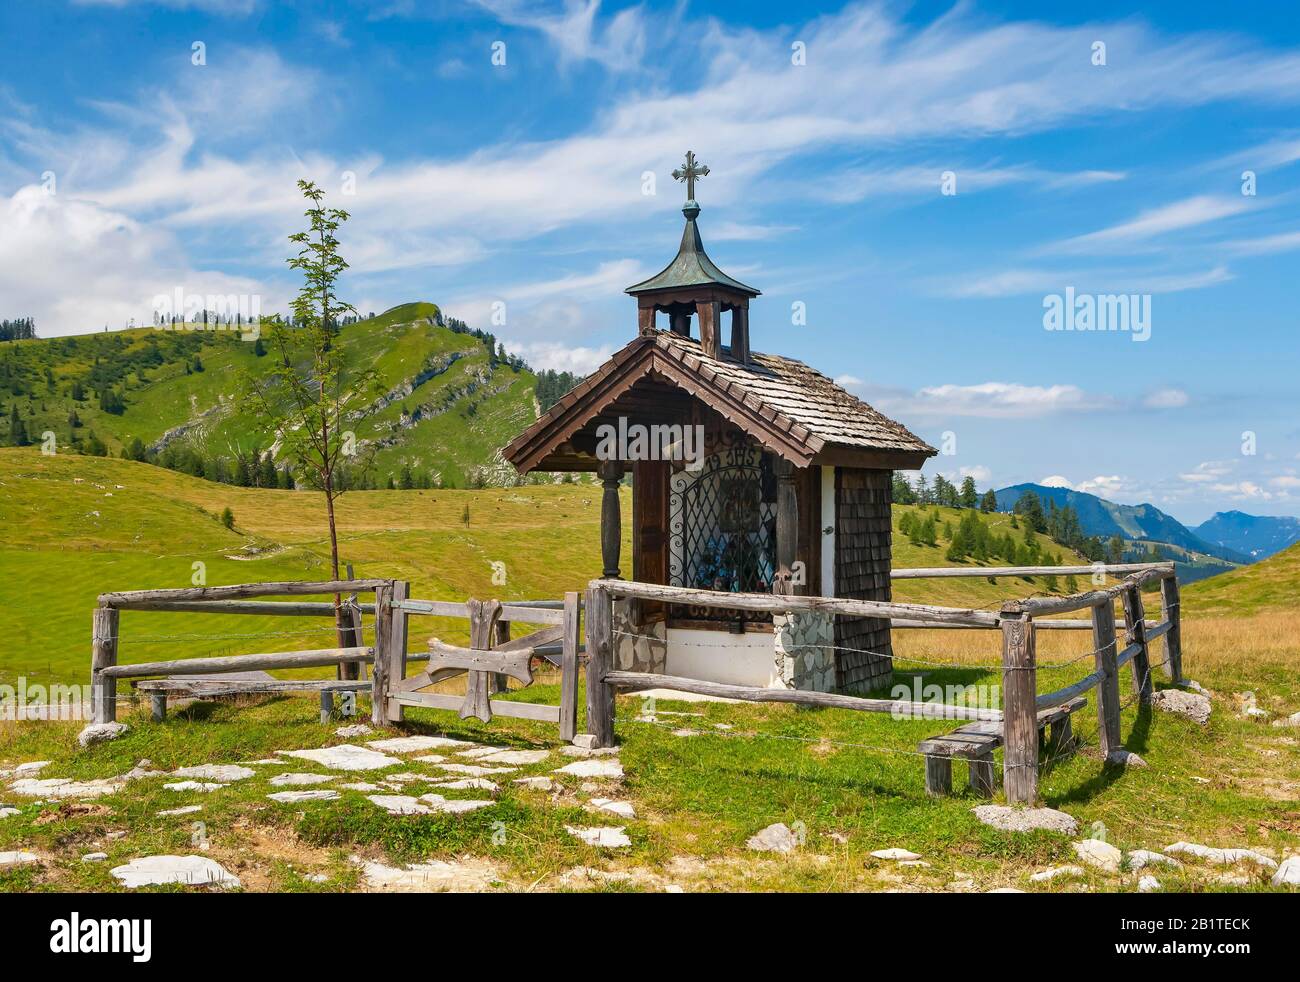 Paysage alpin avec chapelle, Postalm, Salzkammergut, province de Salzbourg, Autriche Banque D'Images